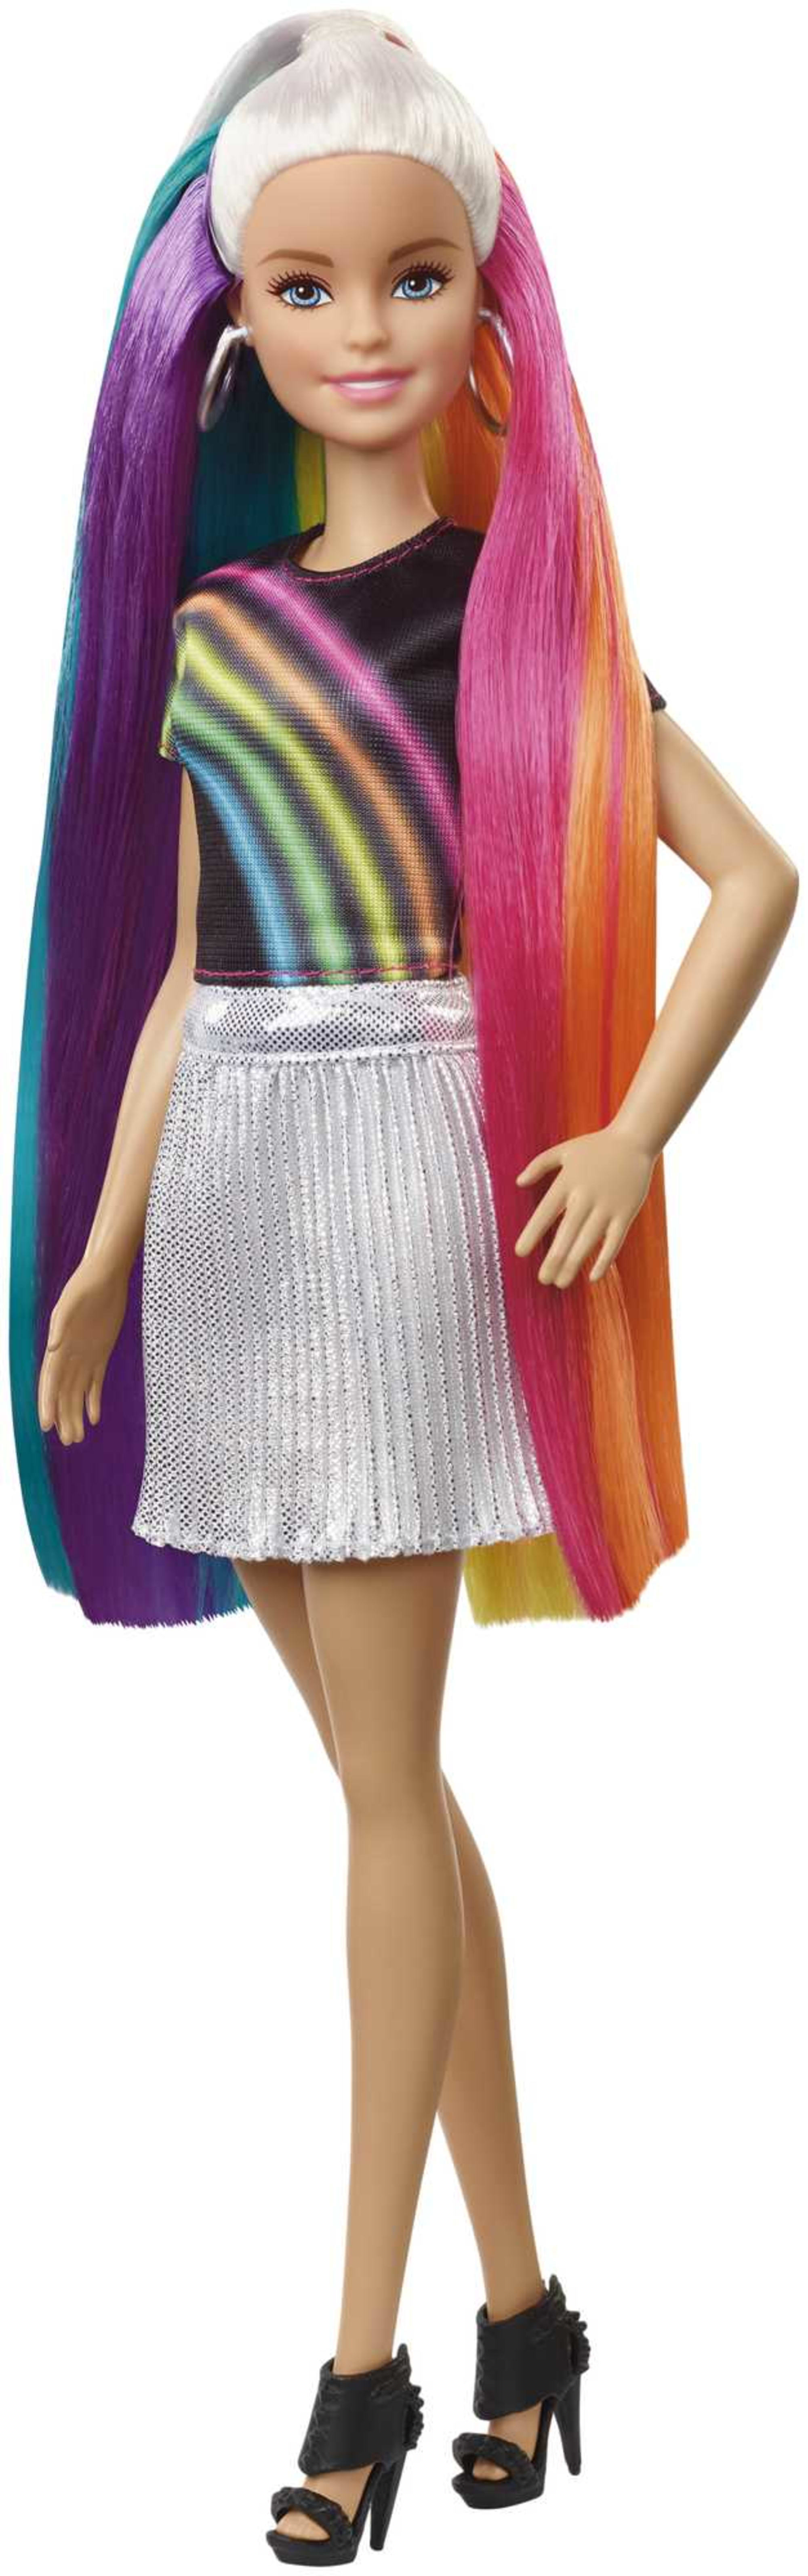 Barbie Rainbow Sparkle Hair – Child's Play